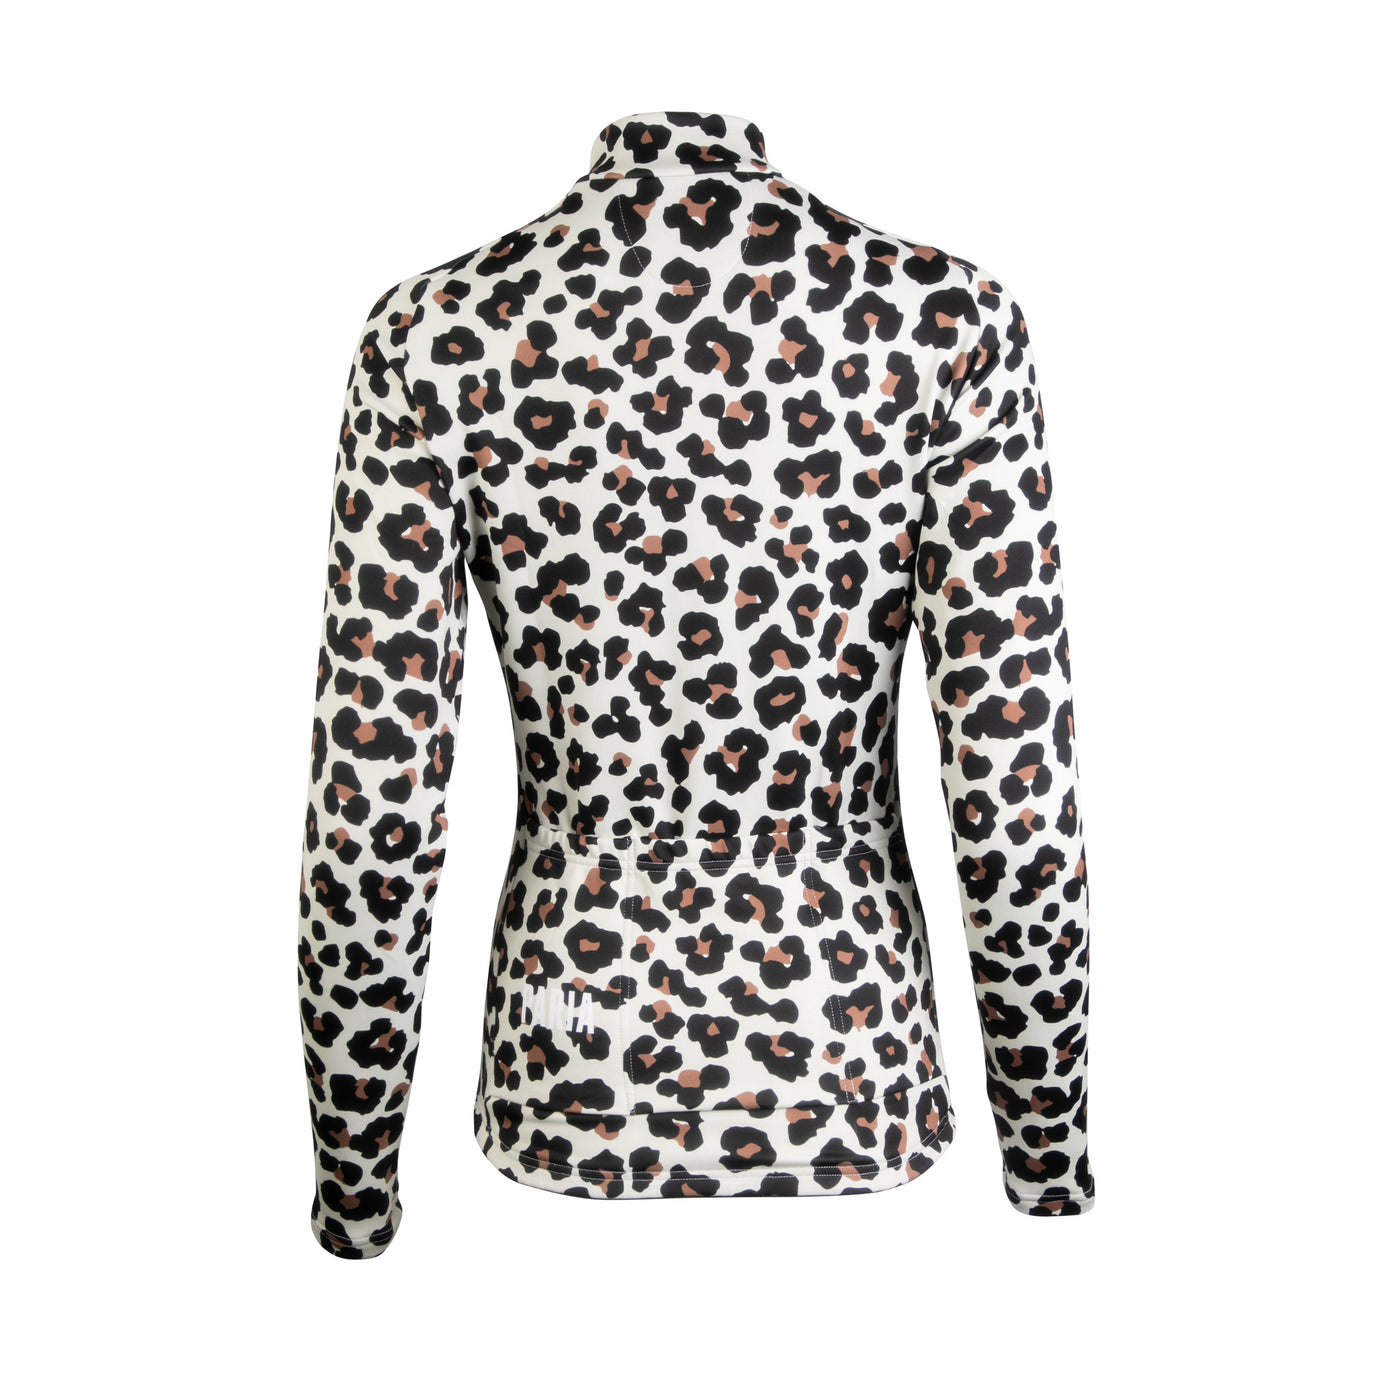 Leopard Print Women's Long Sleeve Aero Jersey